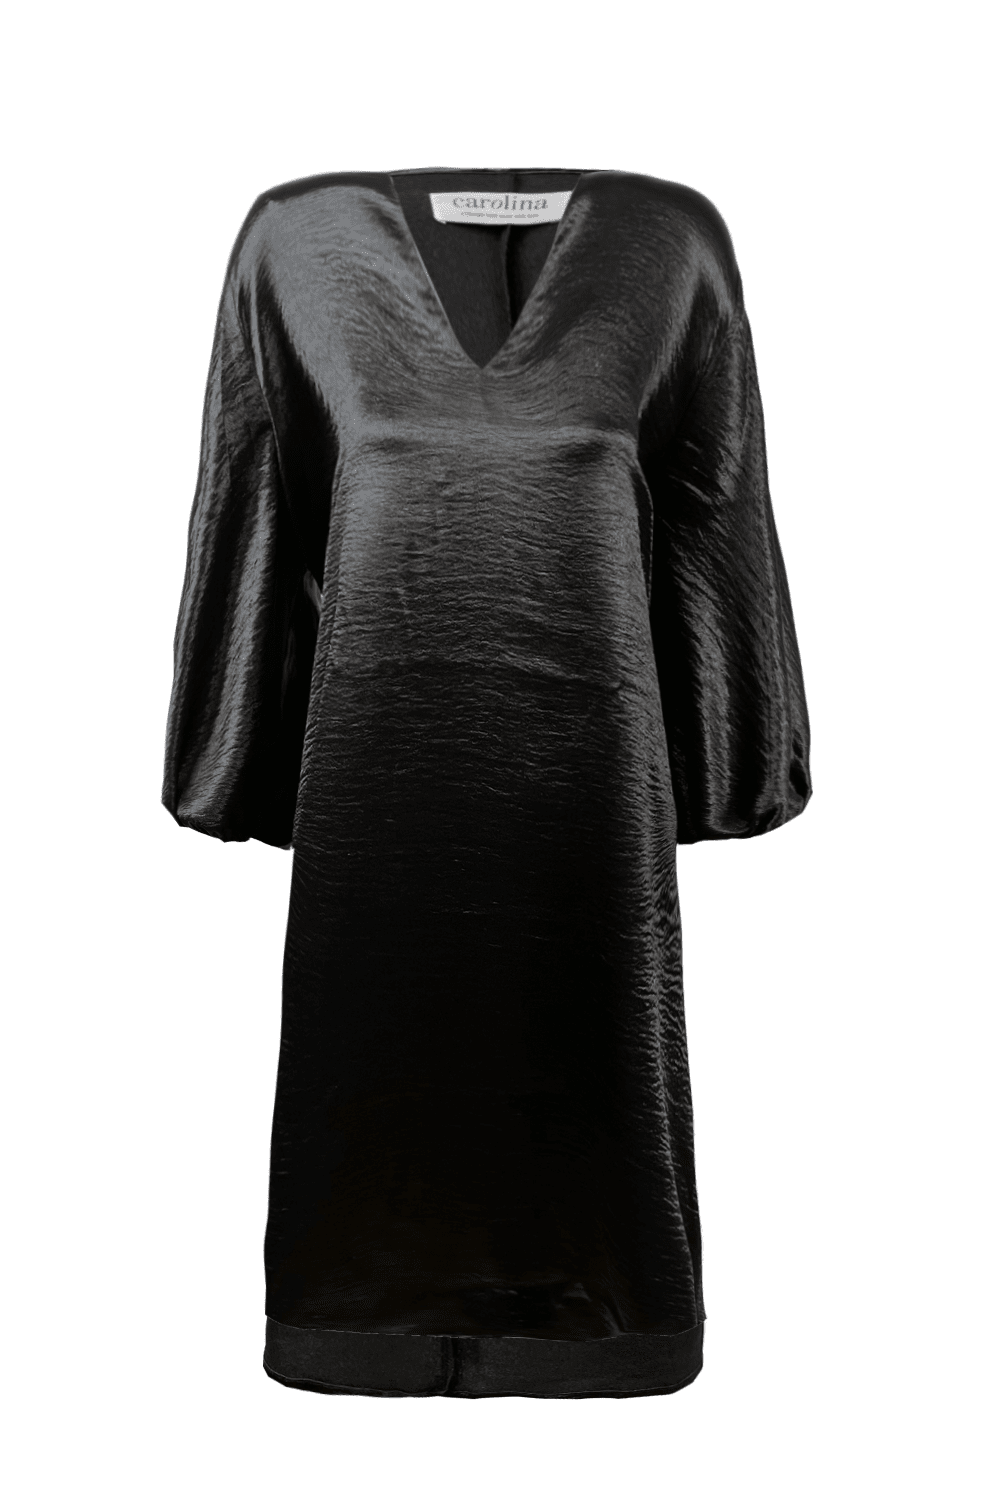 Eliana Dress Black Dress